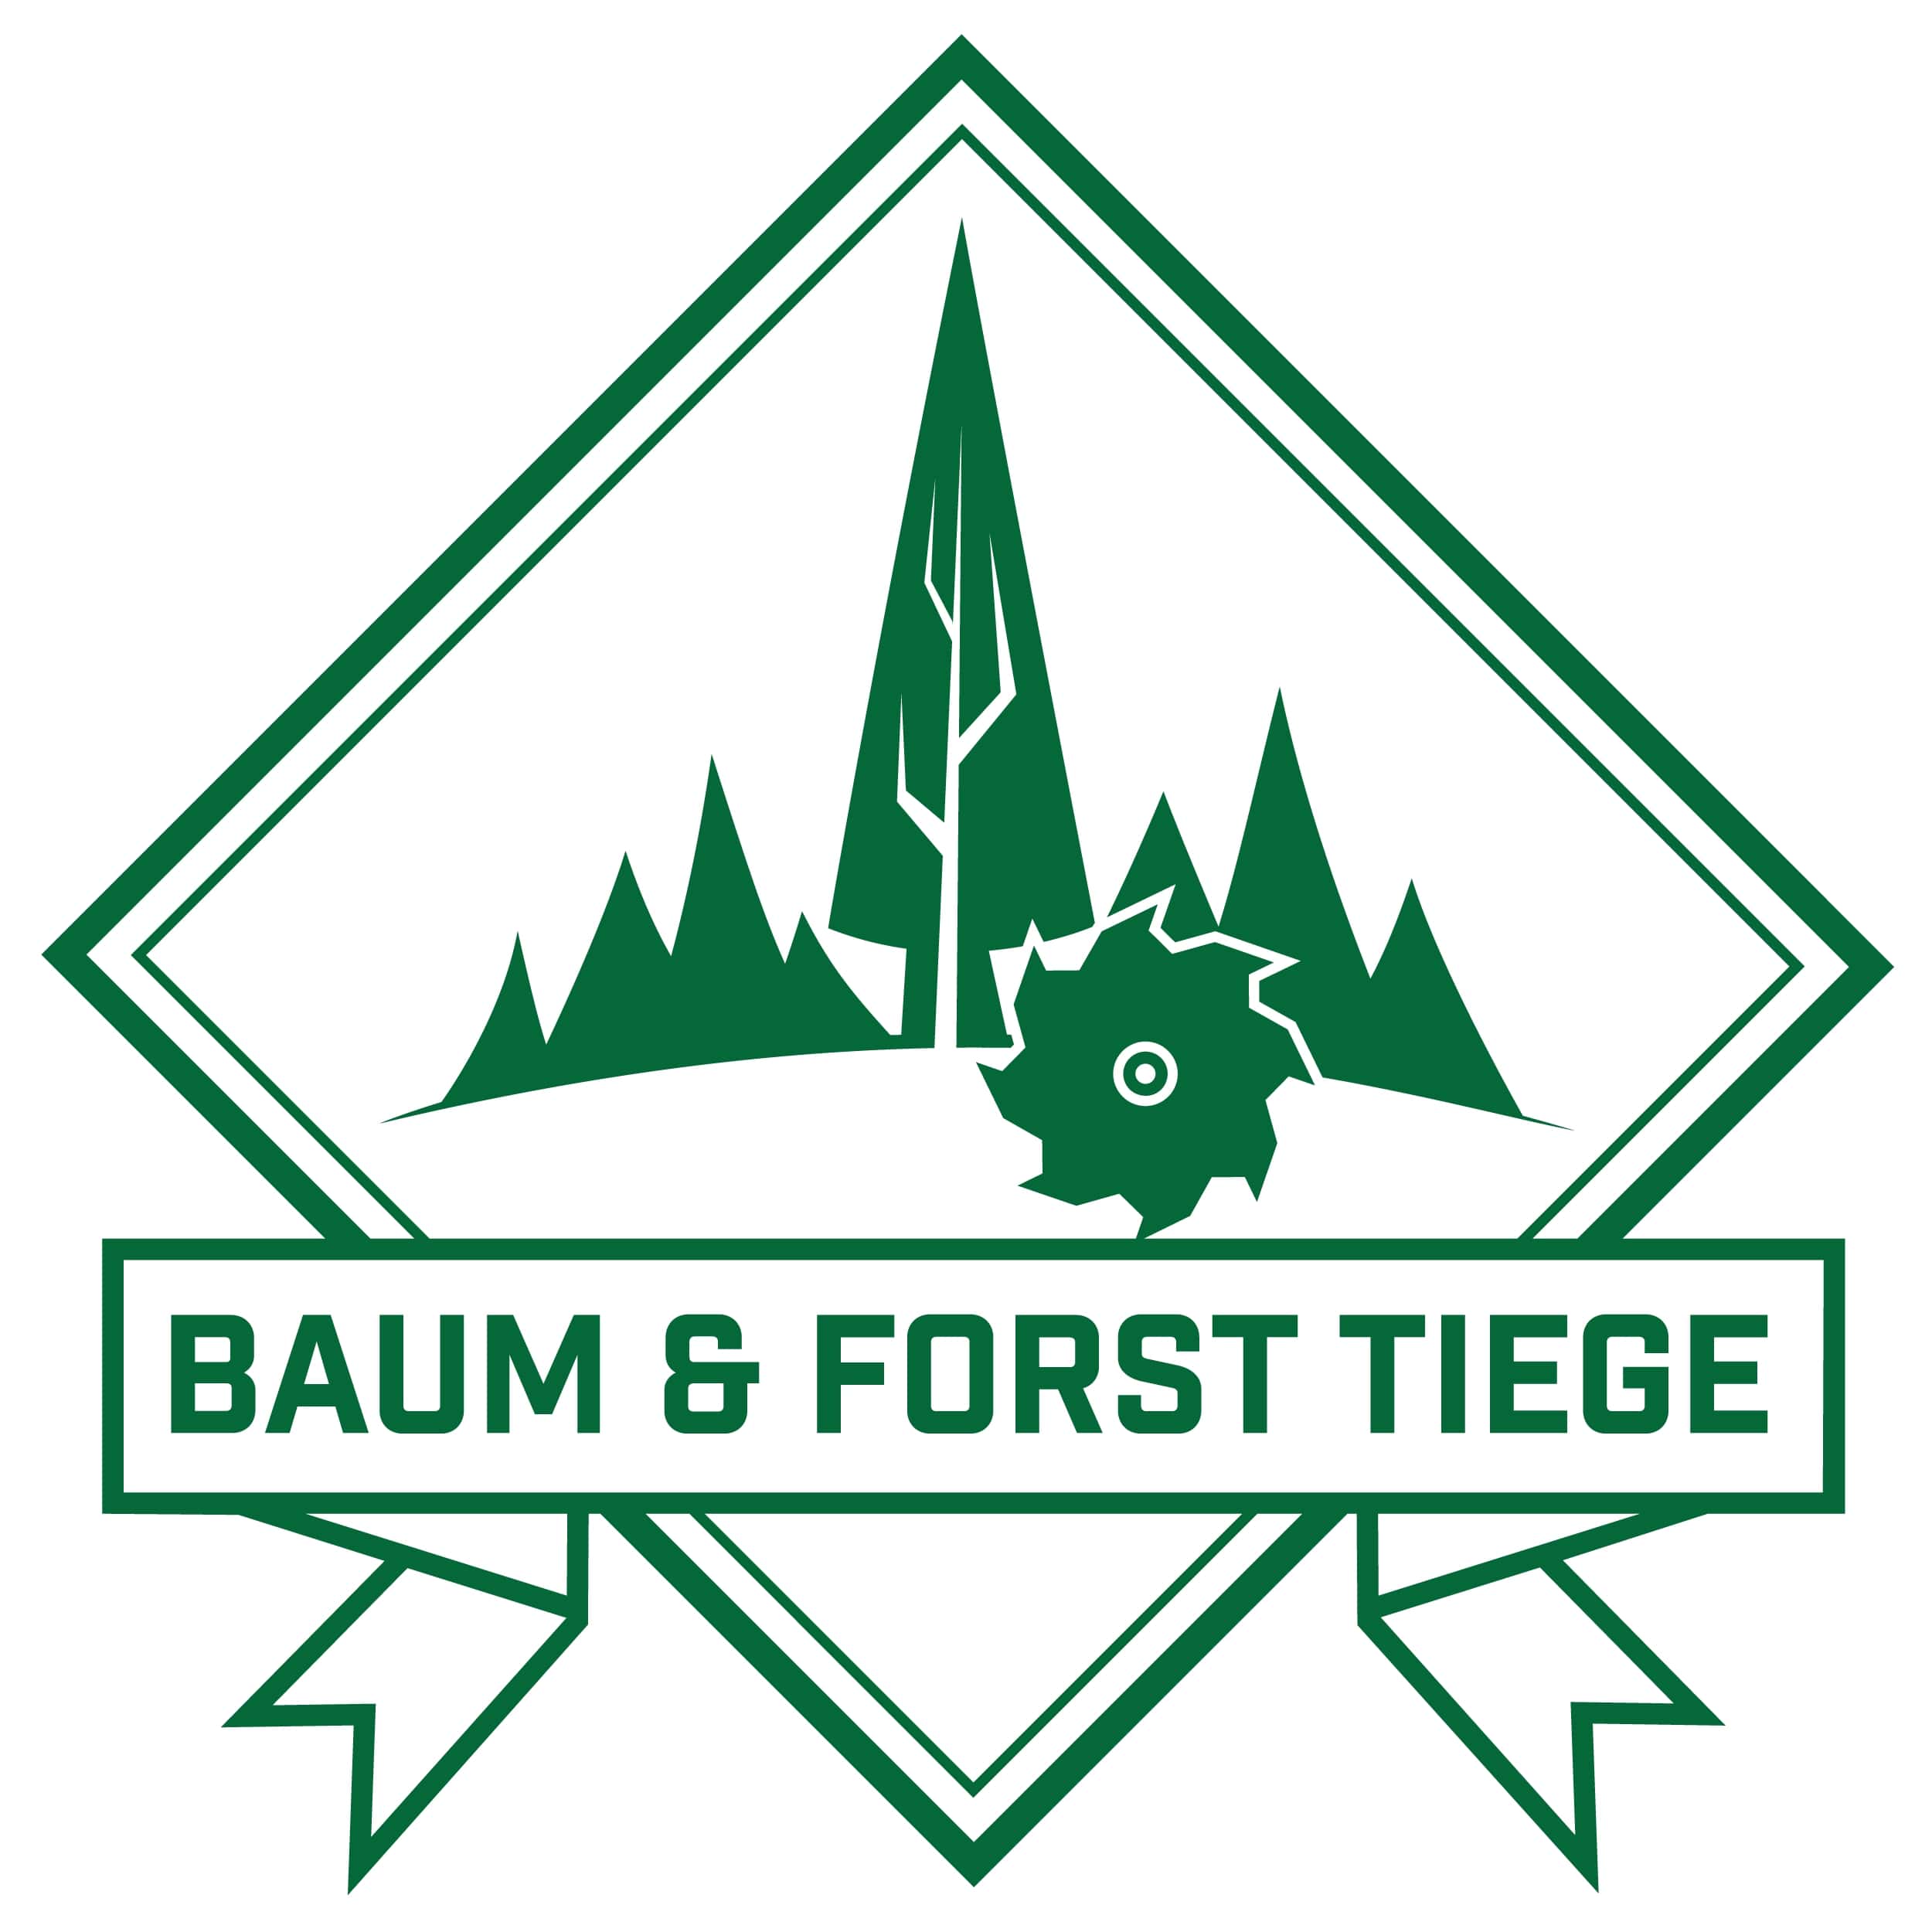 Baum & Forst Tiege - Logo